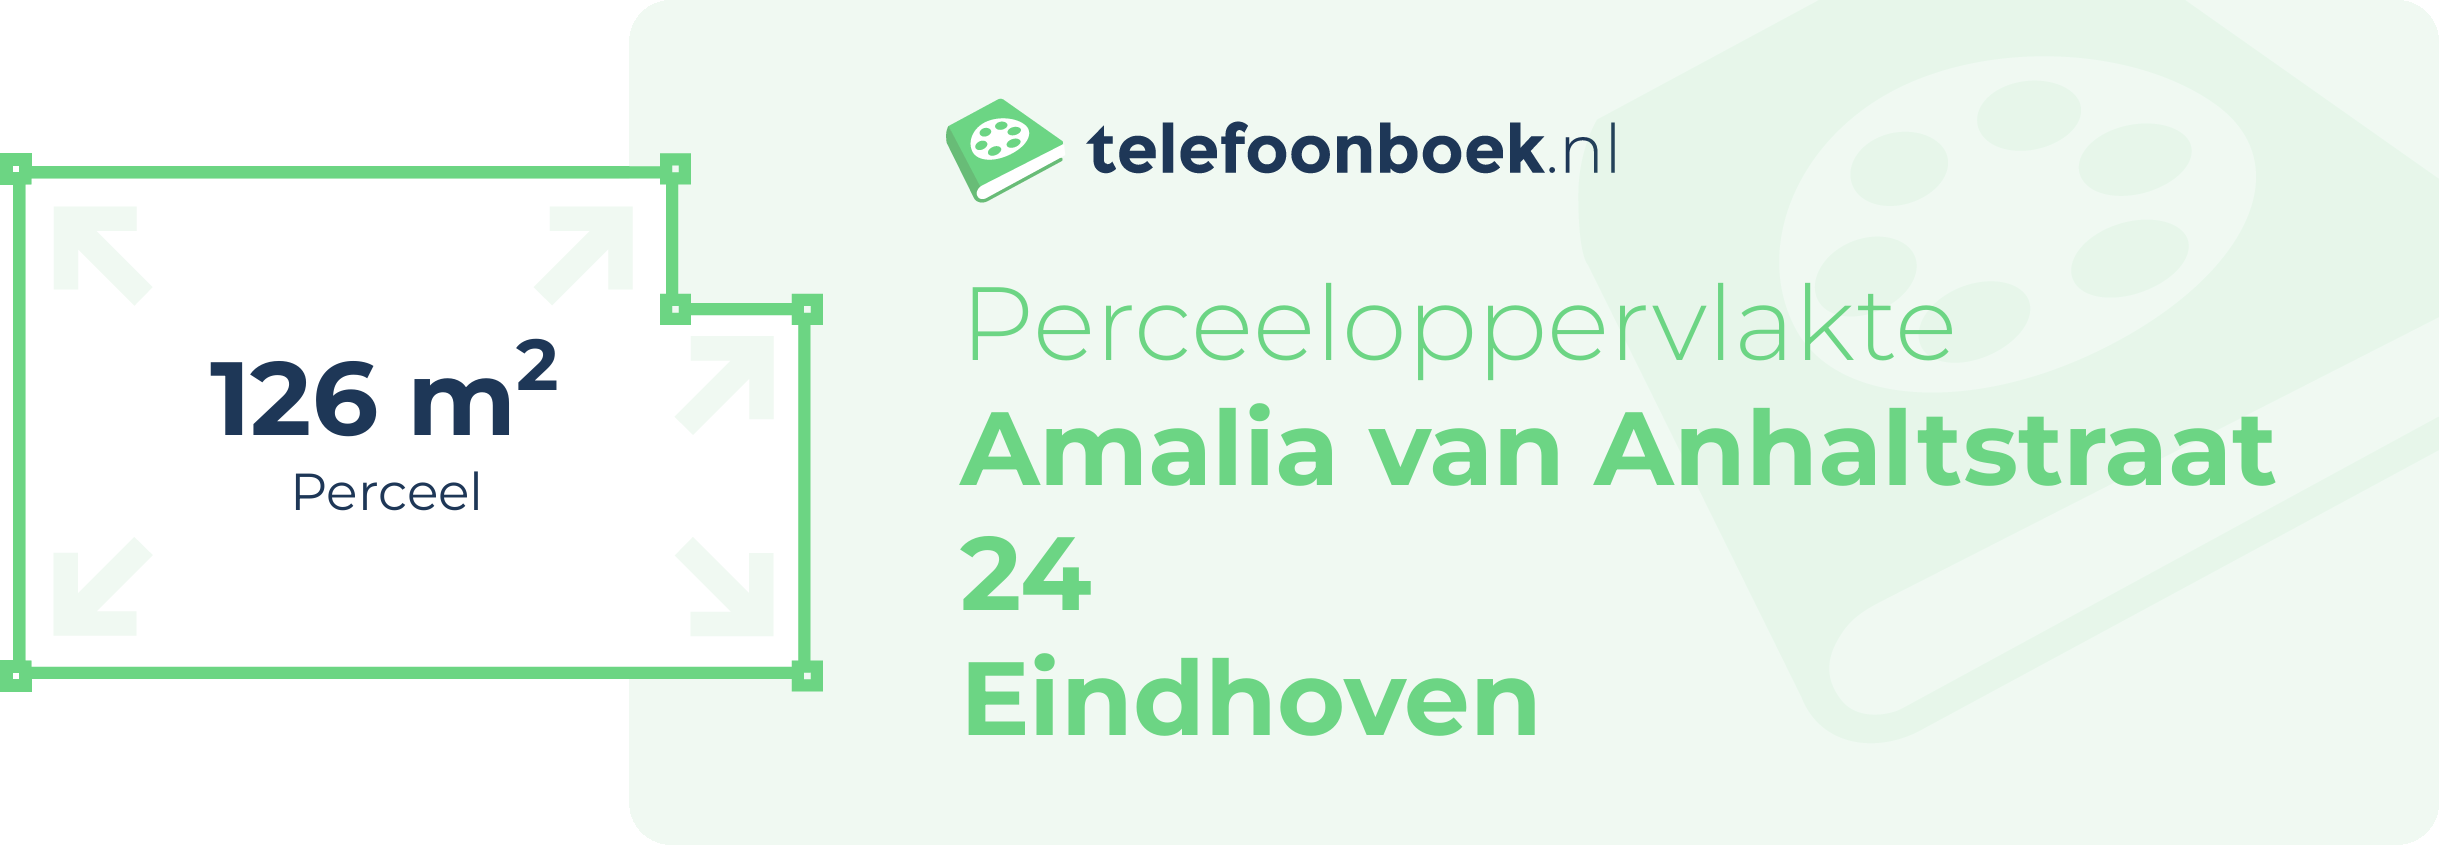 Perceeloppervlakte Amalia Van Anhaltstraat 24 Eindhoven